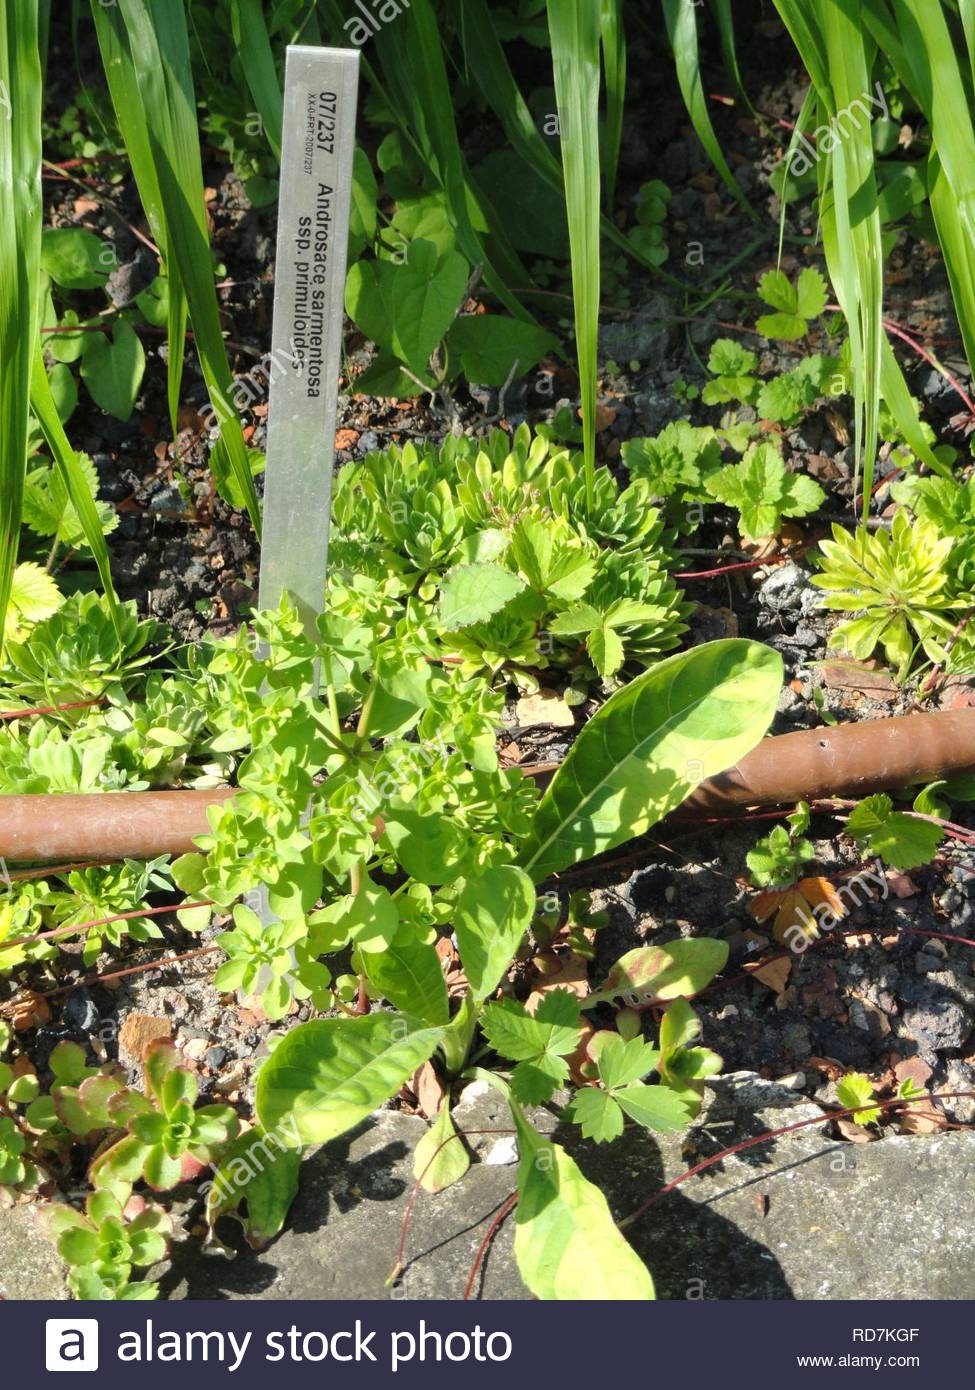 androsace sarmentosa subsp primuloides botanischer garten frankfurt am main RD7KGF